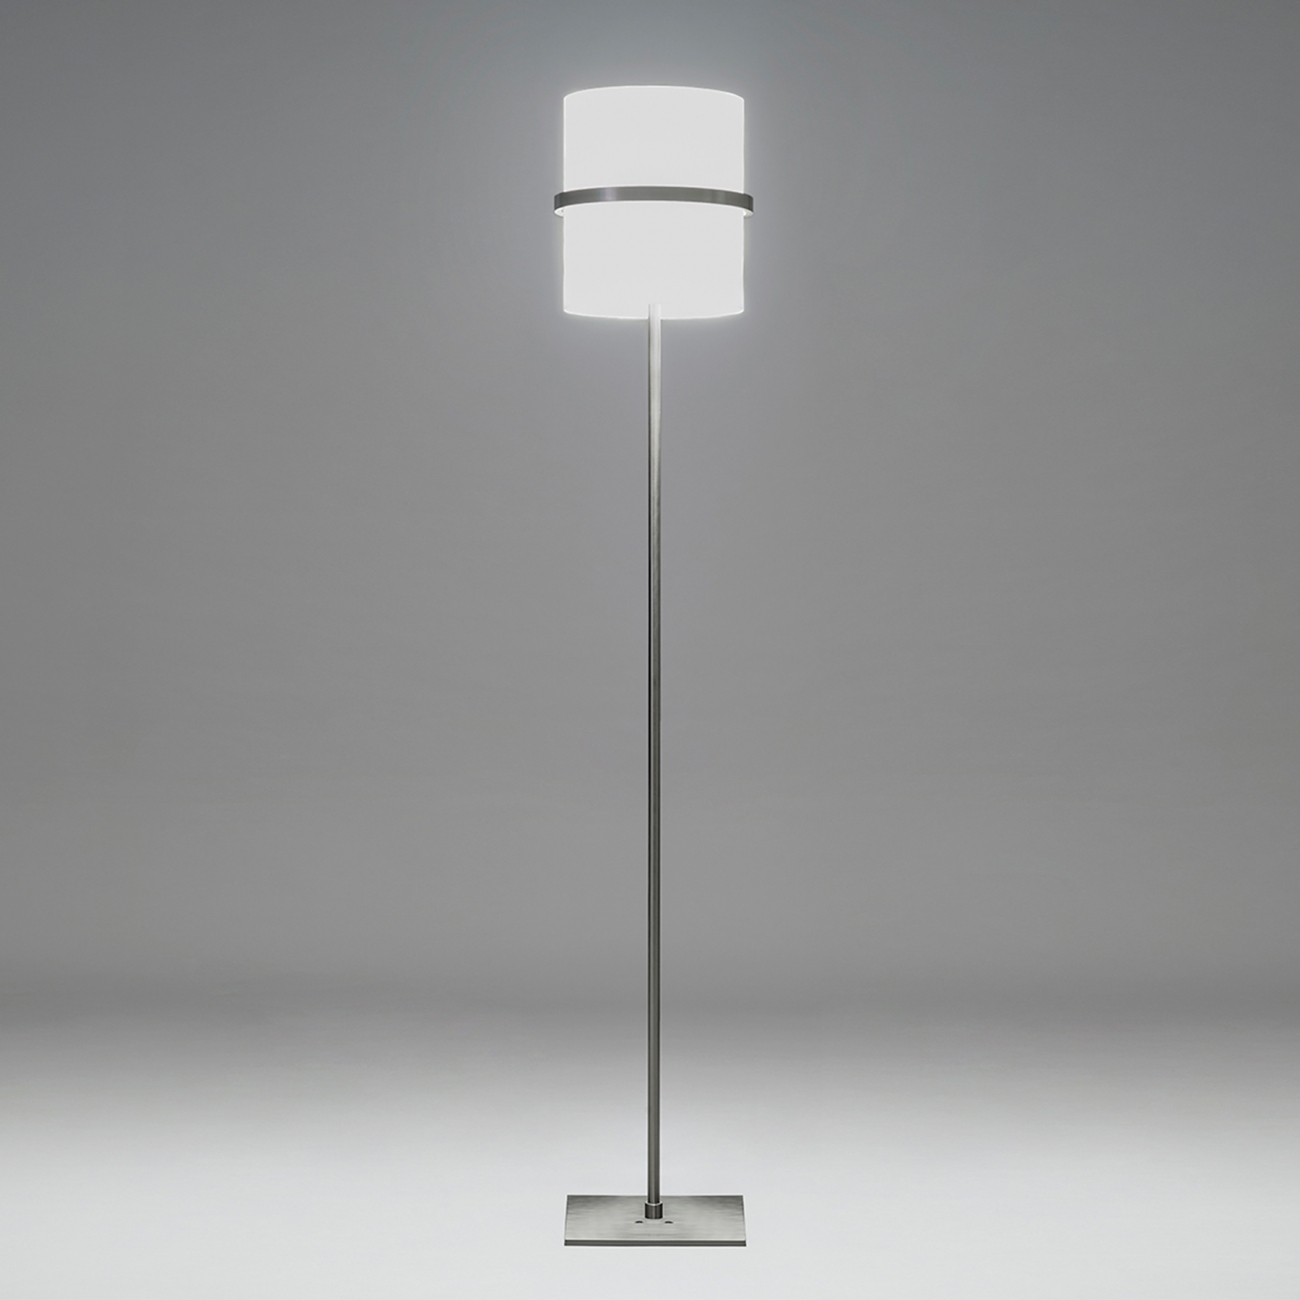 Firmamento Milano Boa Floor Lamp